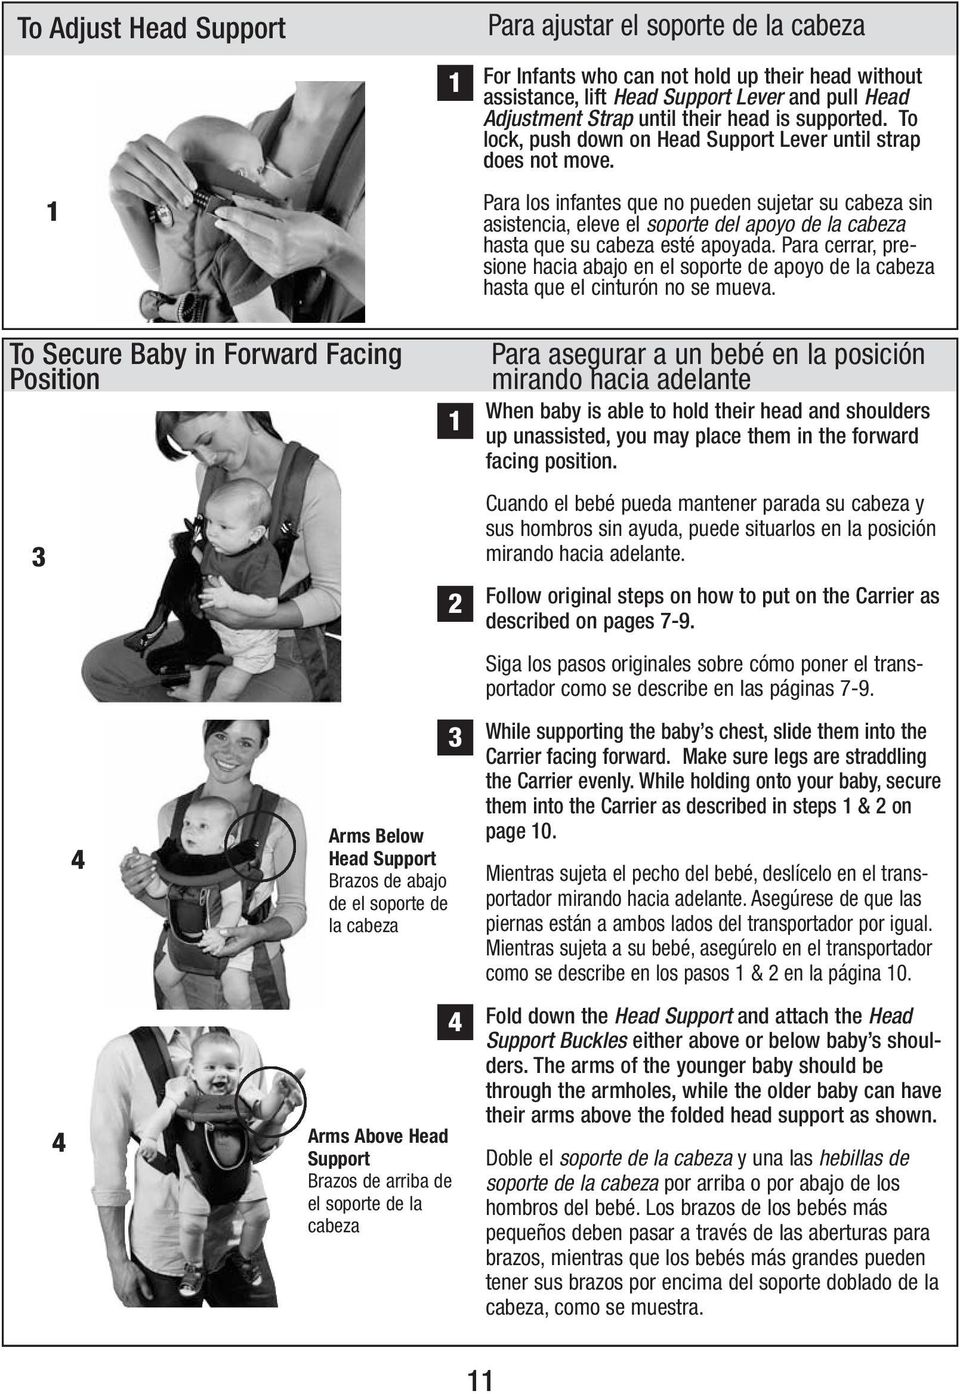 Para los infantes que no pueden sujetar su cabeza sin asistencia, eleve el soporte del apoyo de la cabeza hasta que su cabeza esté apoyada.